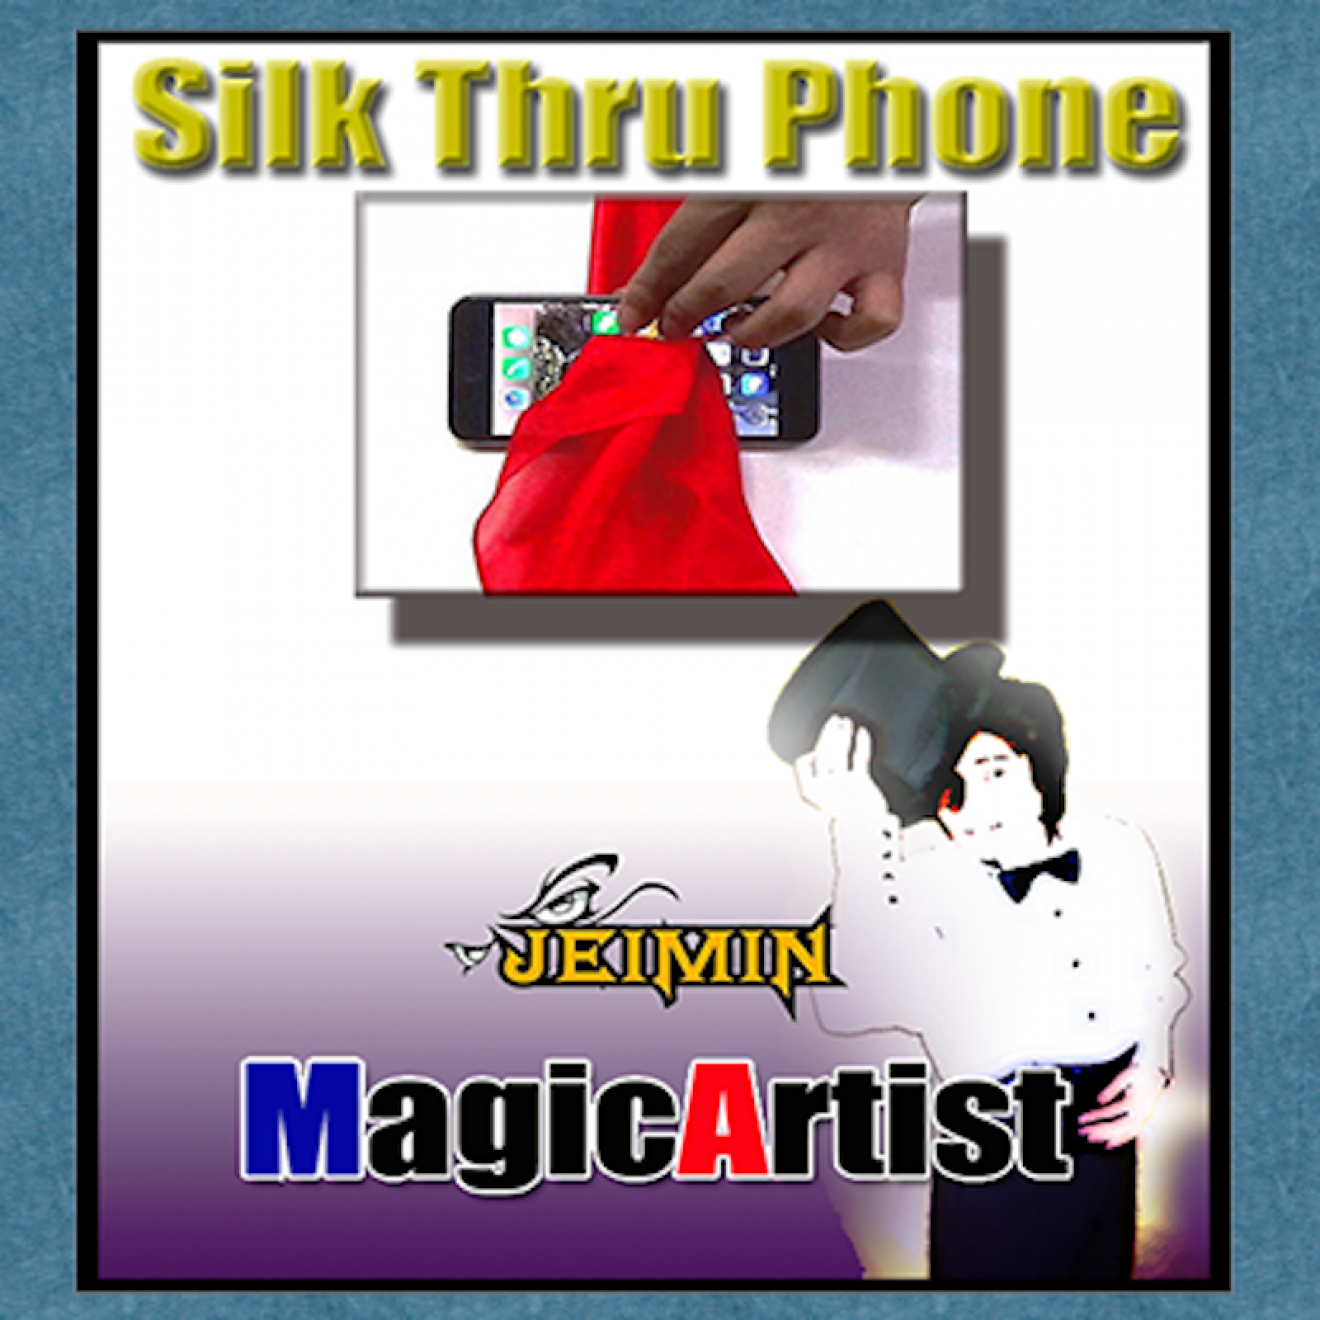 Silk Thru Phone by Jamie Lee